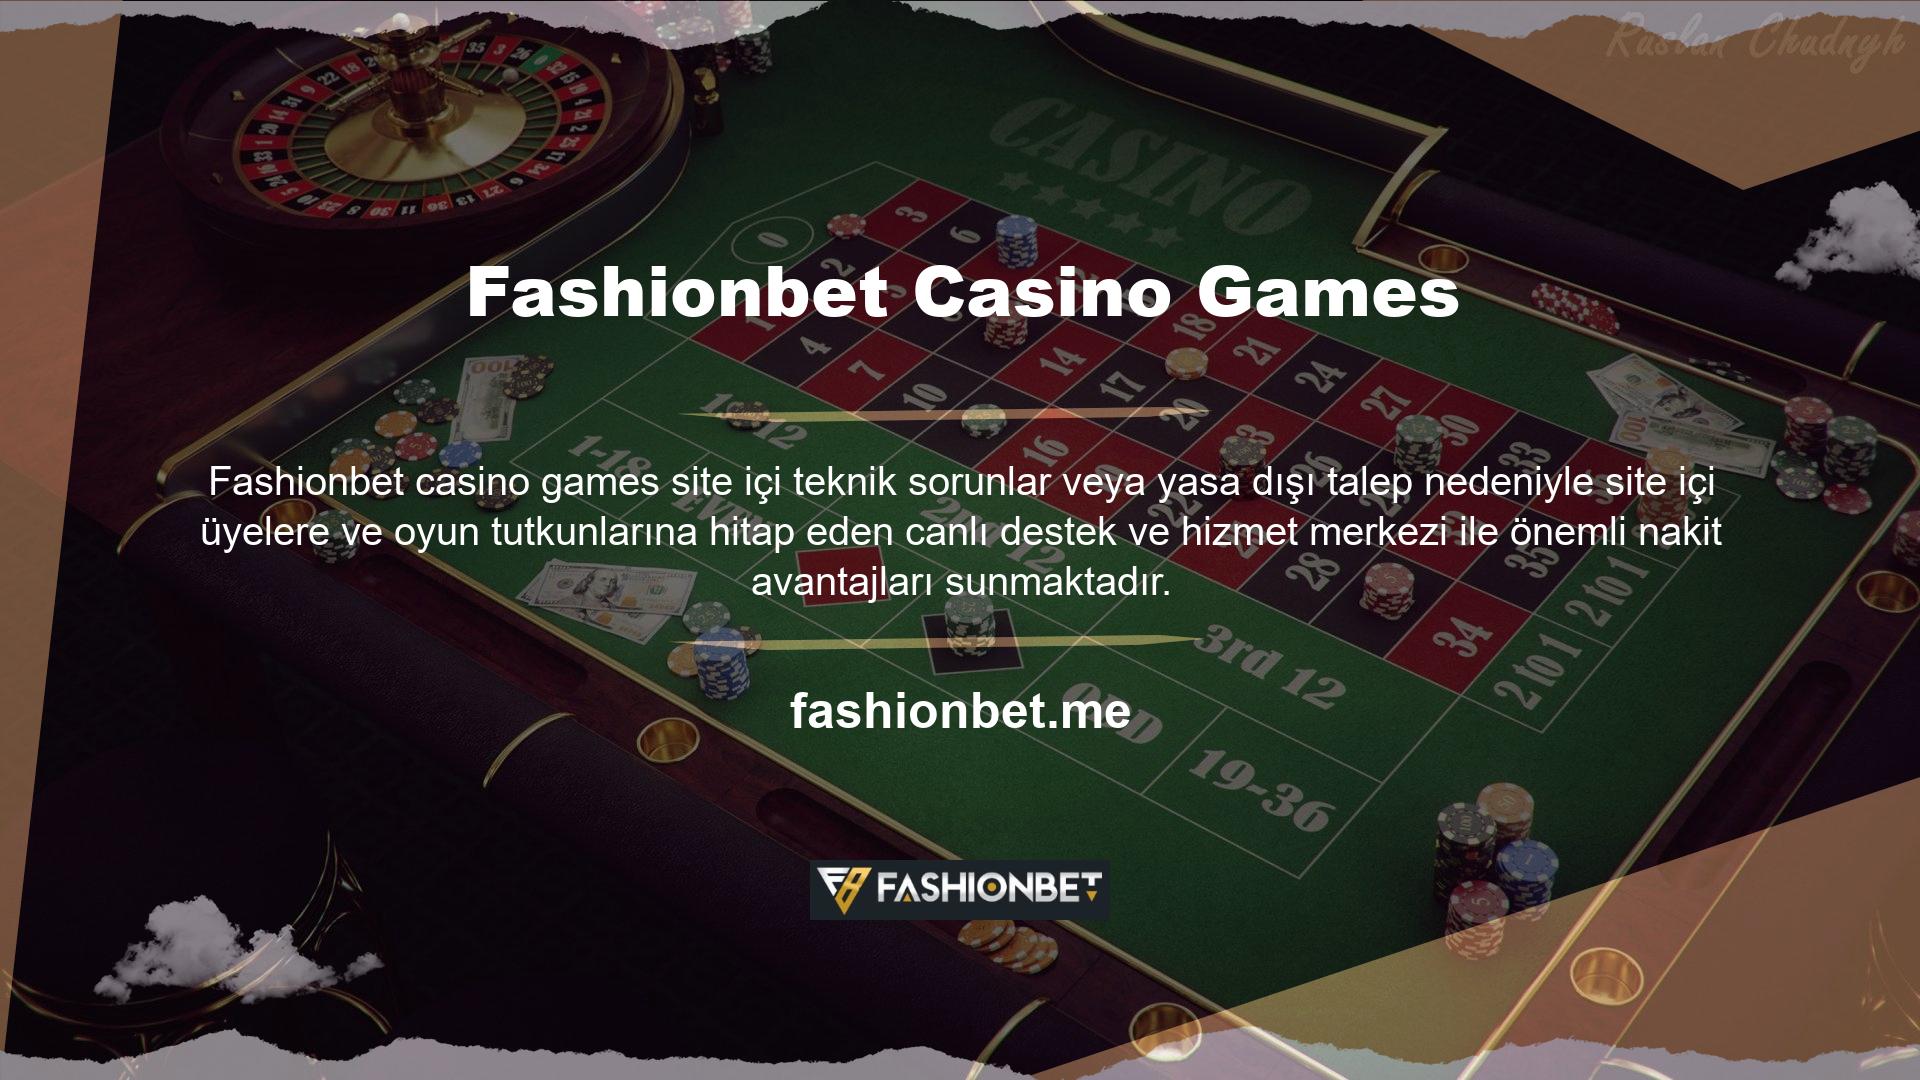 Fashionbet, yasa dışı casino siteleri için 7/24 canlı destek ve hizmet vermektedir